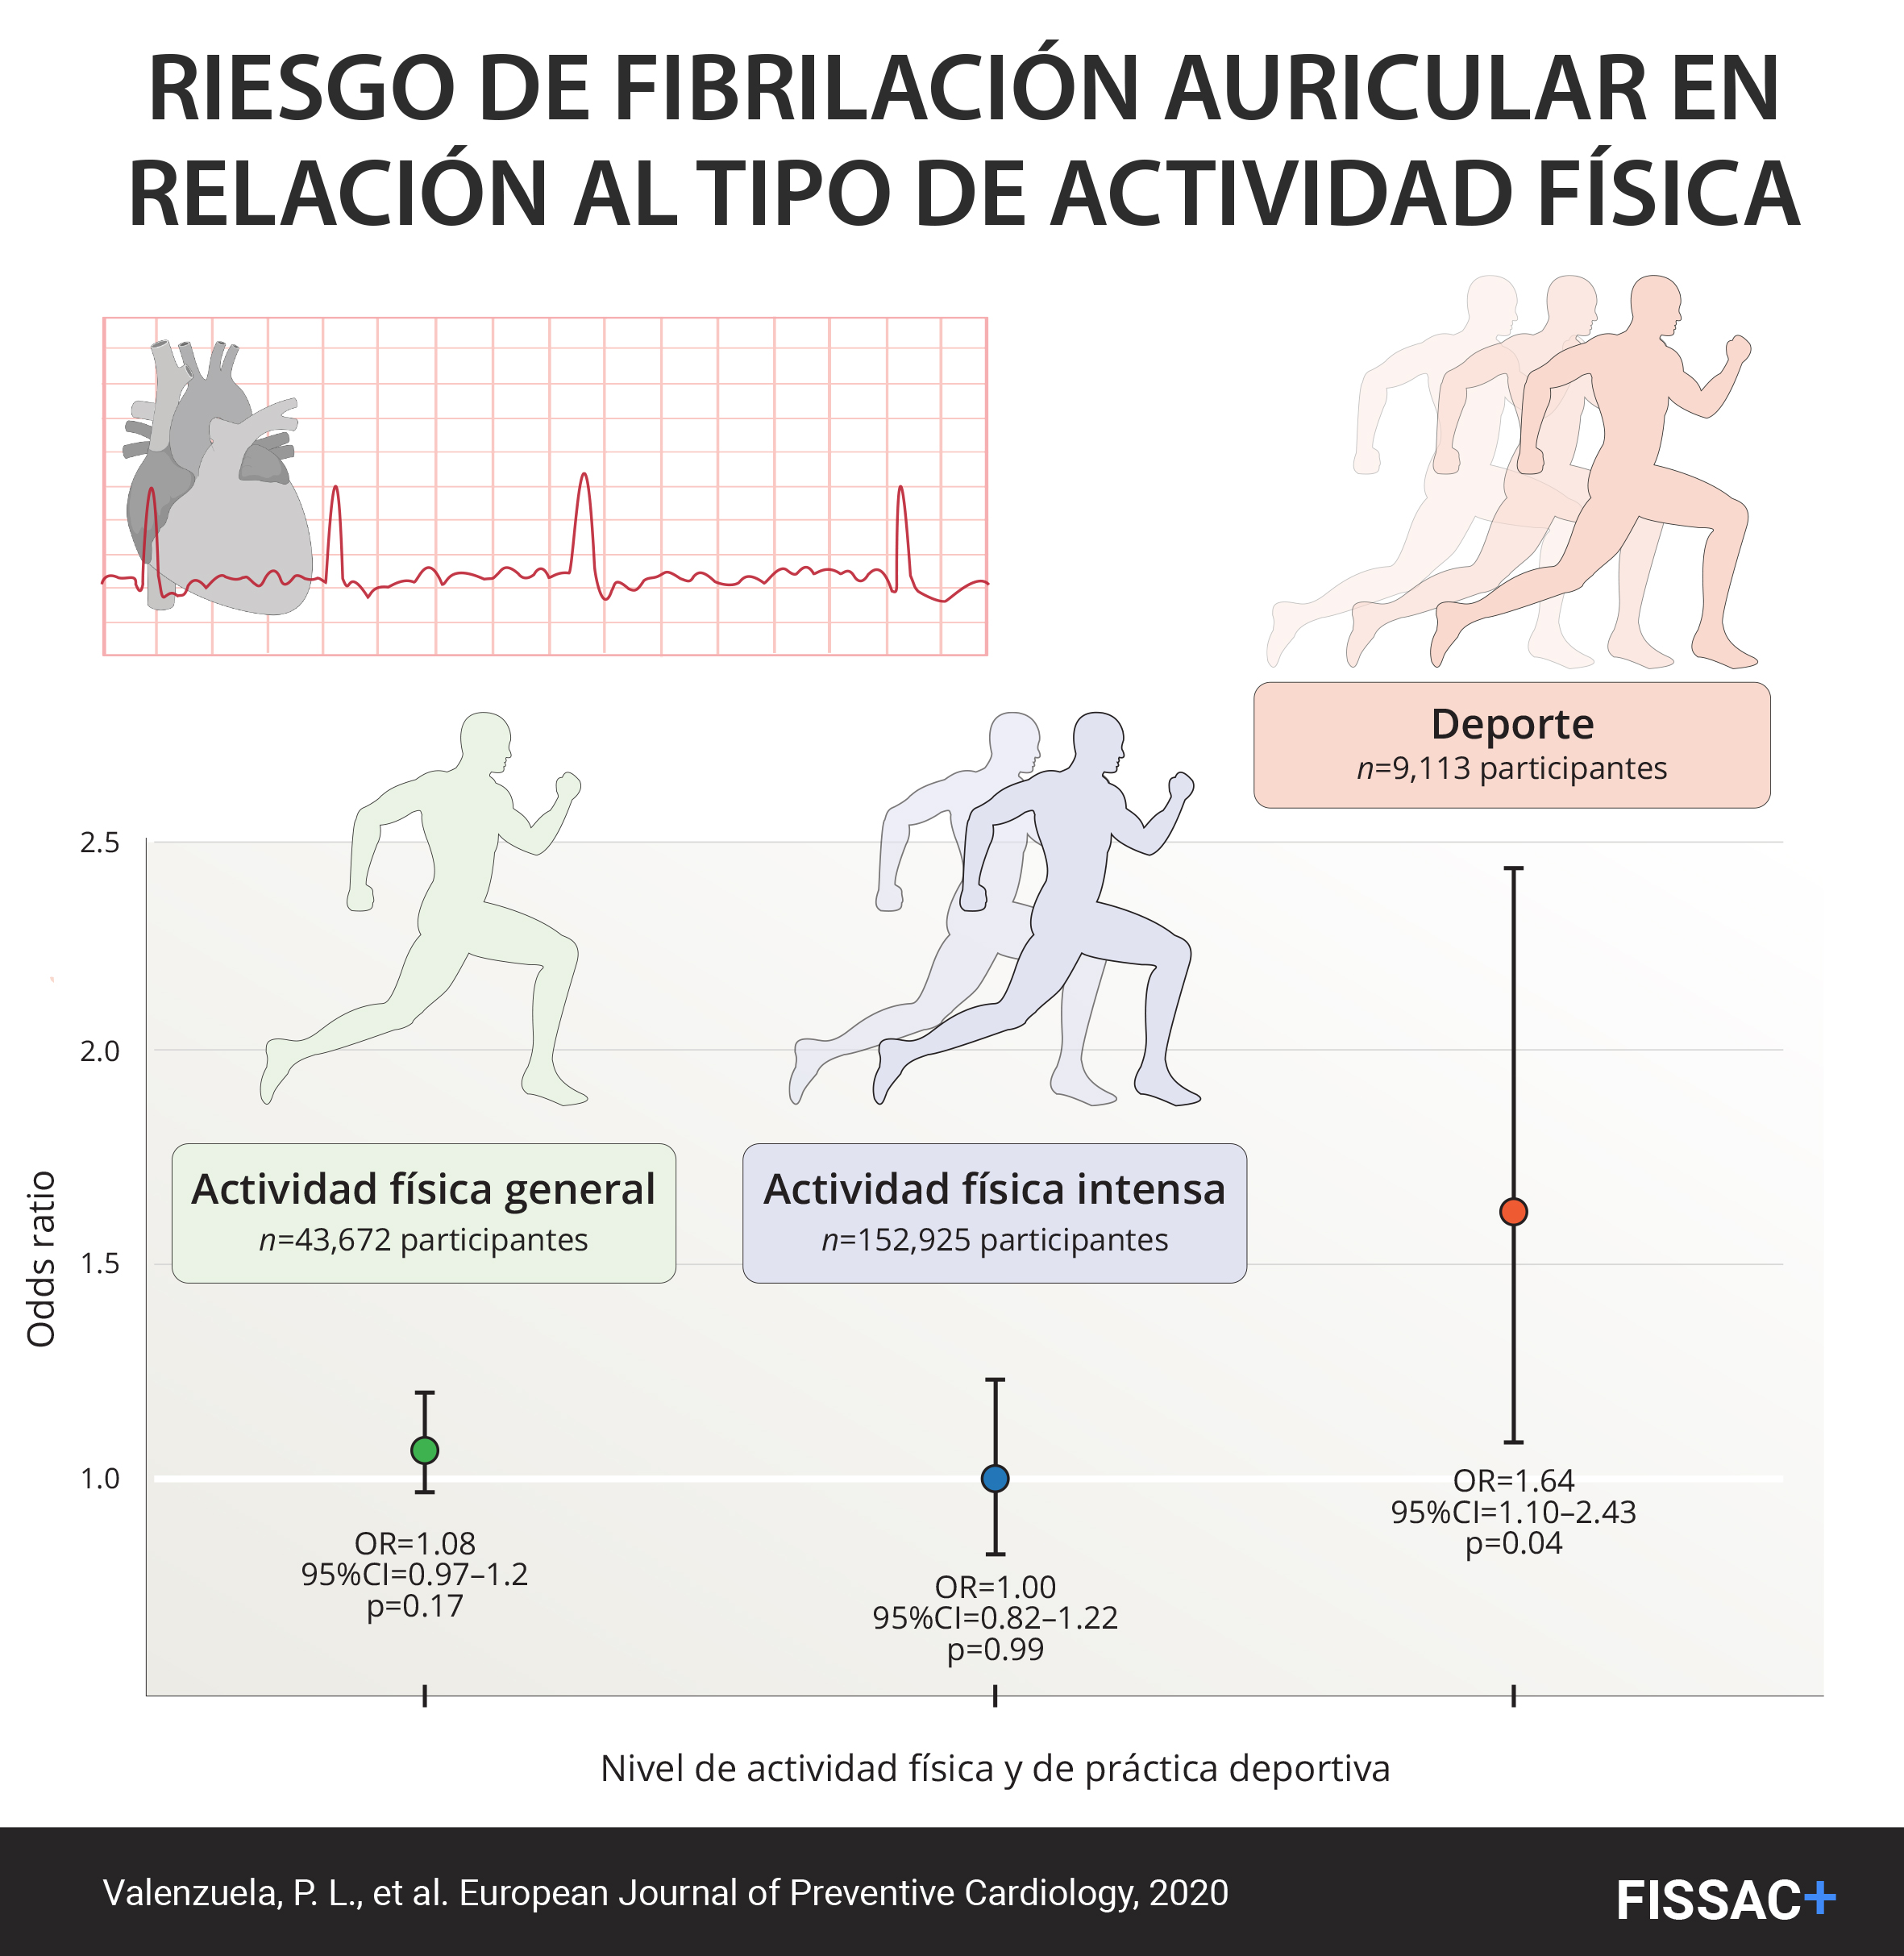 Fissac - Fisiología, Salud y Actividad Física - En la Newsletter